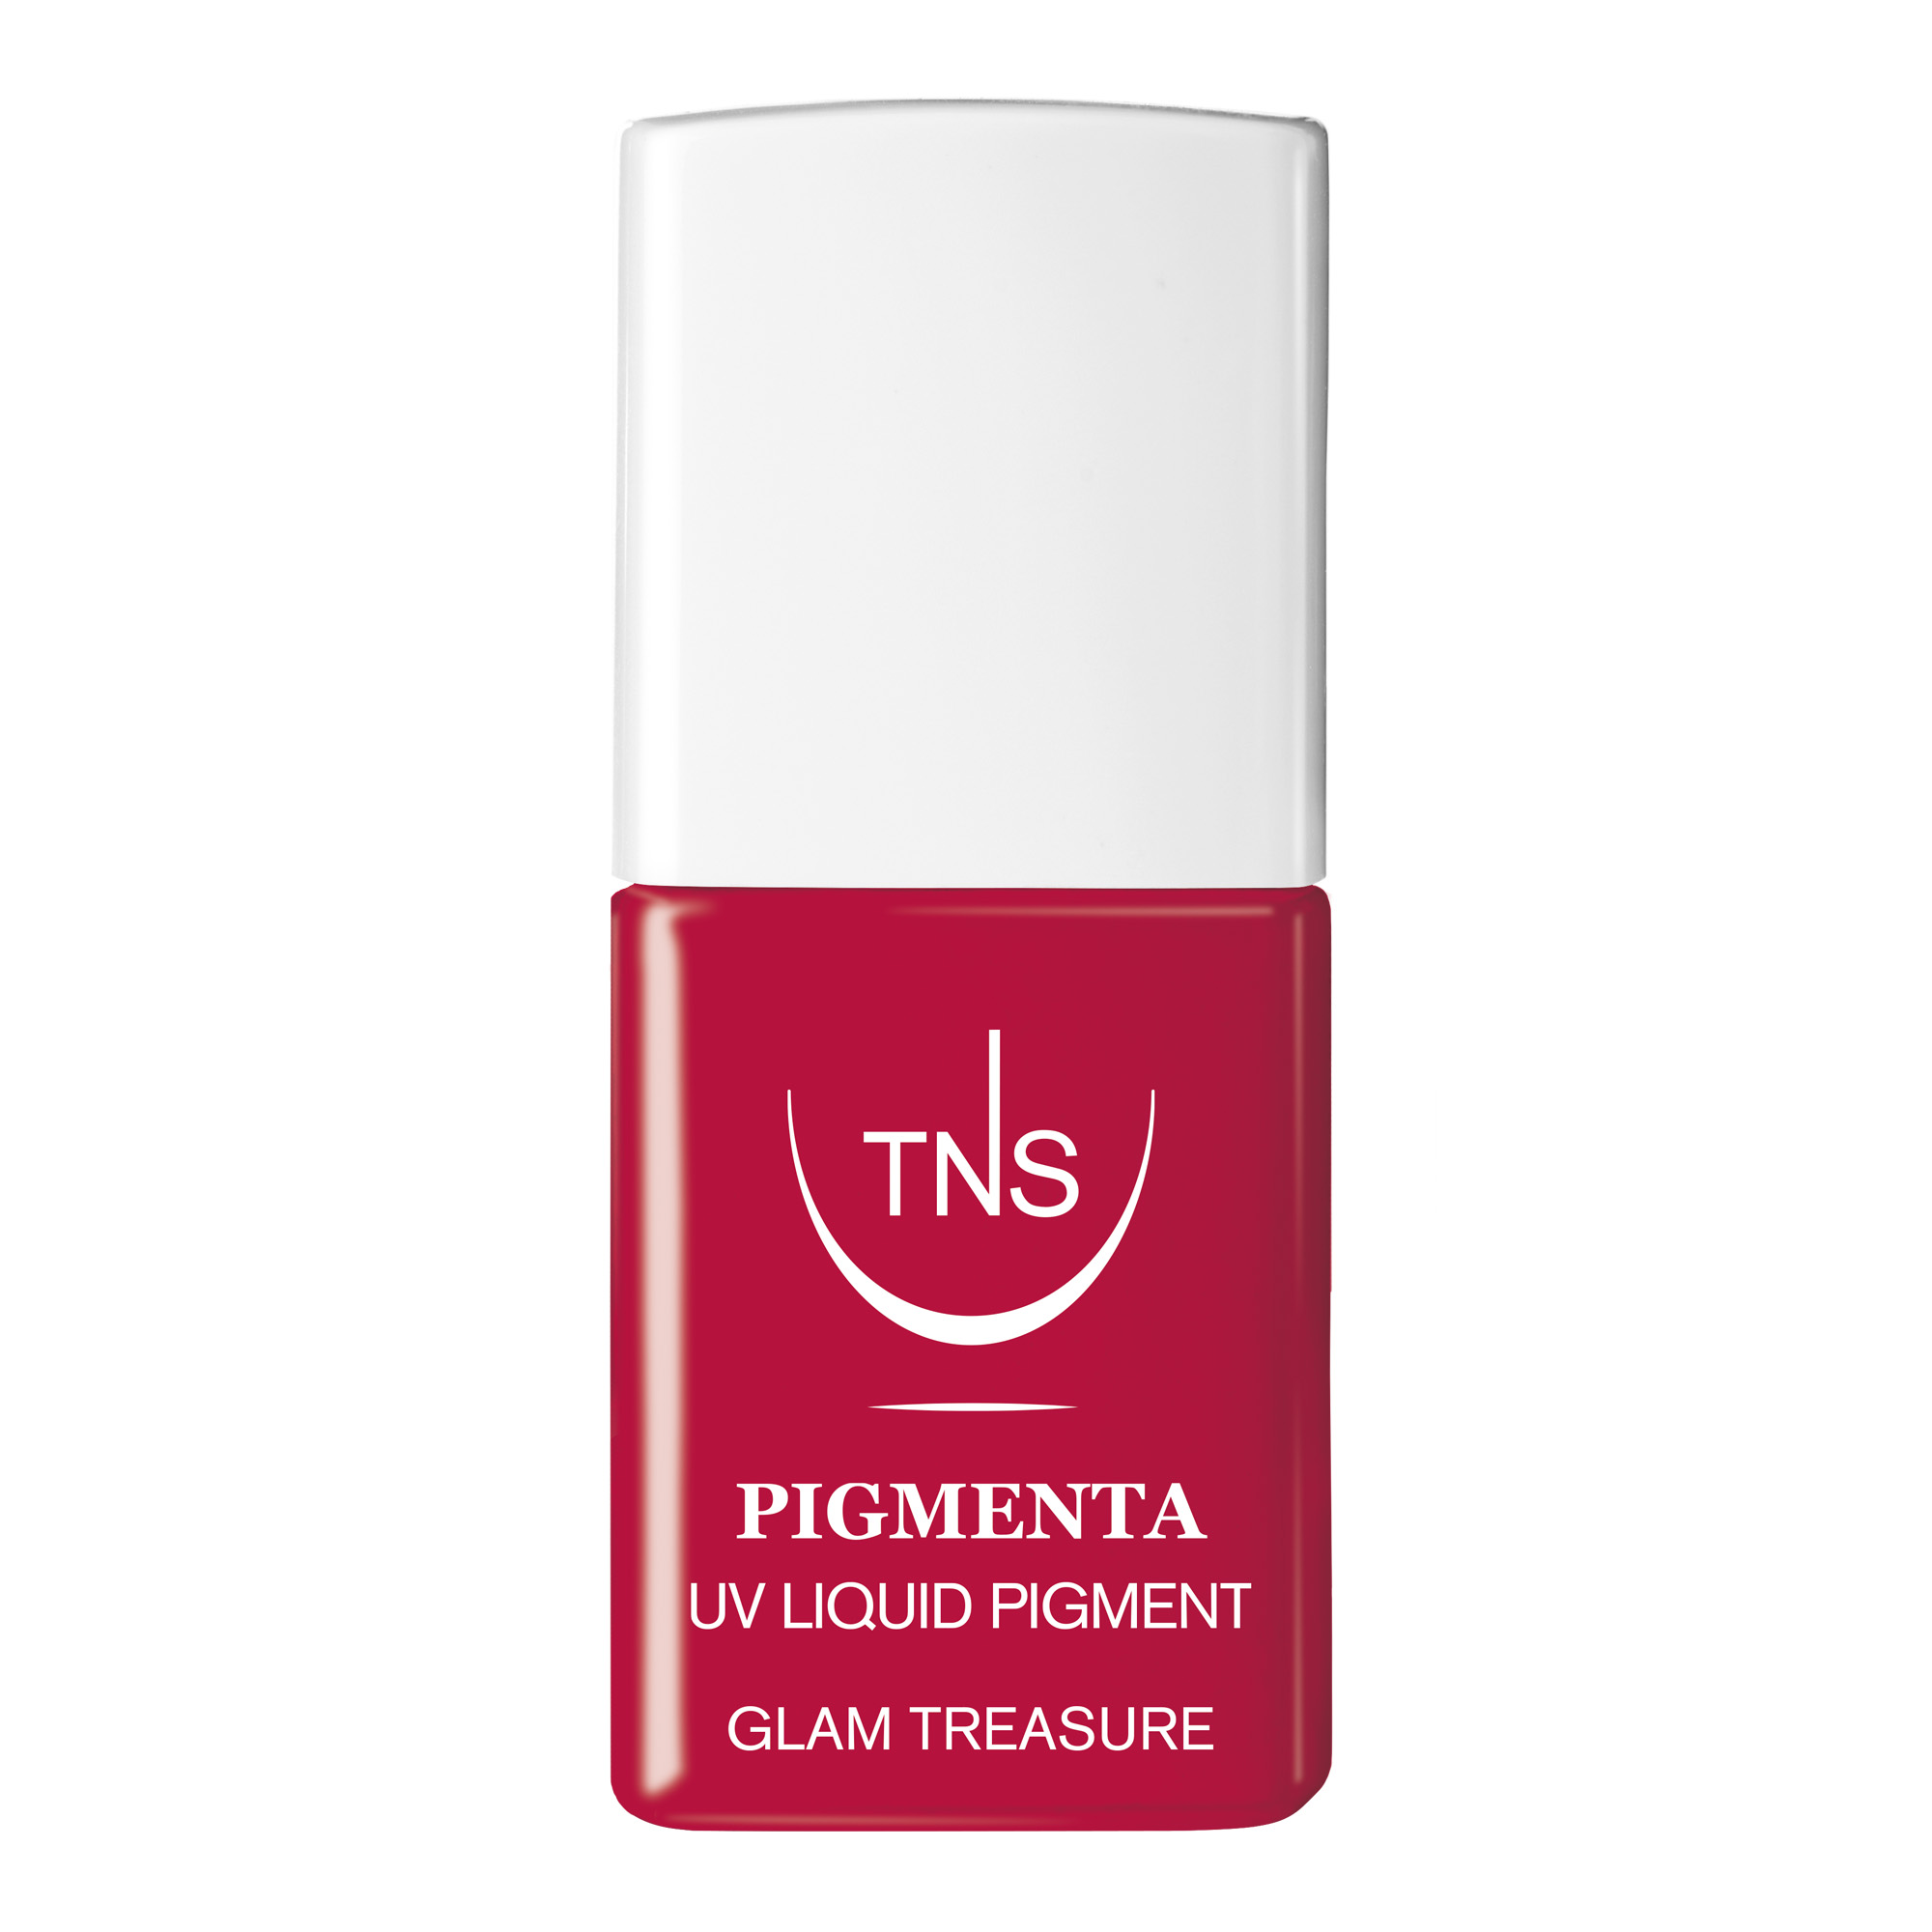 Pigmento Liquido UV Glam Treasure rosso carminio 10 ml Pigmenta TNS